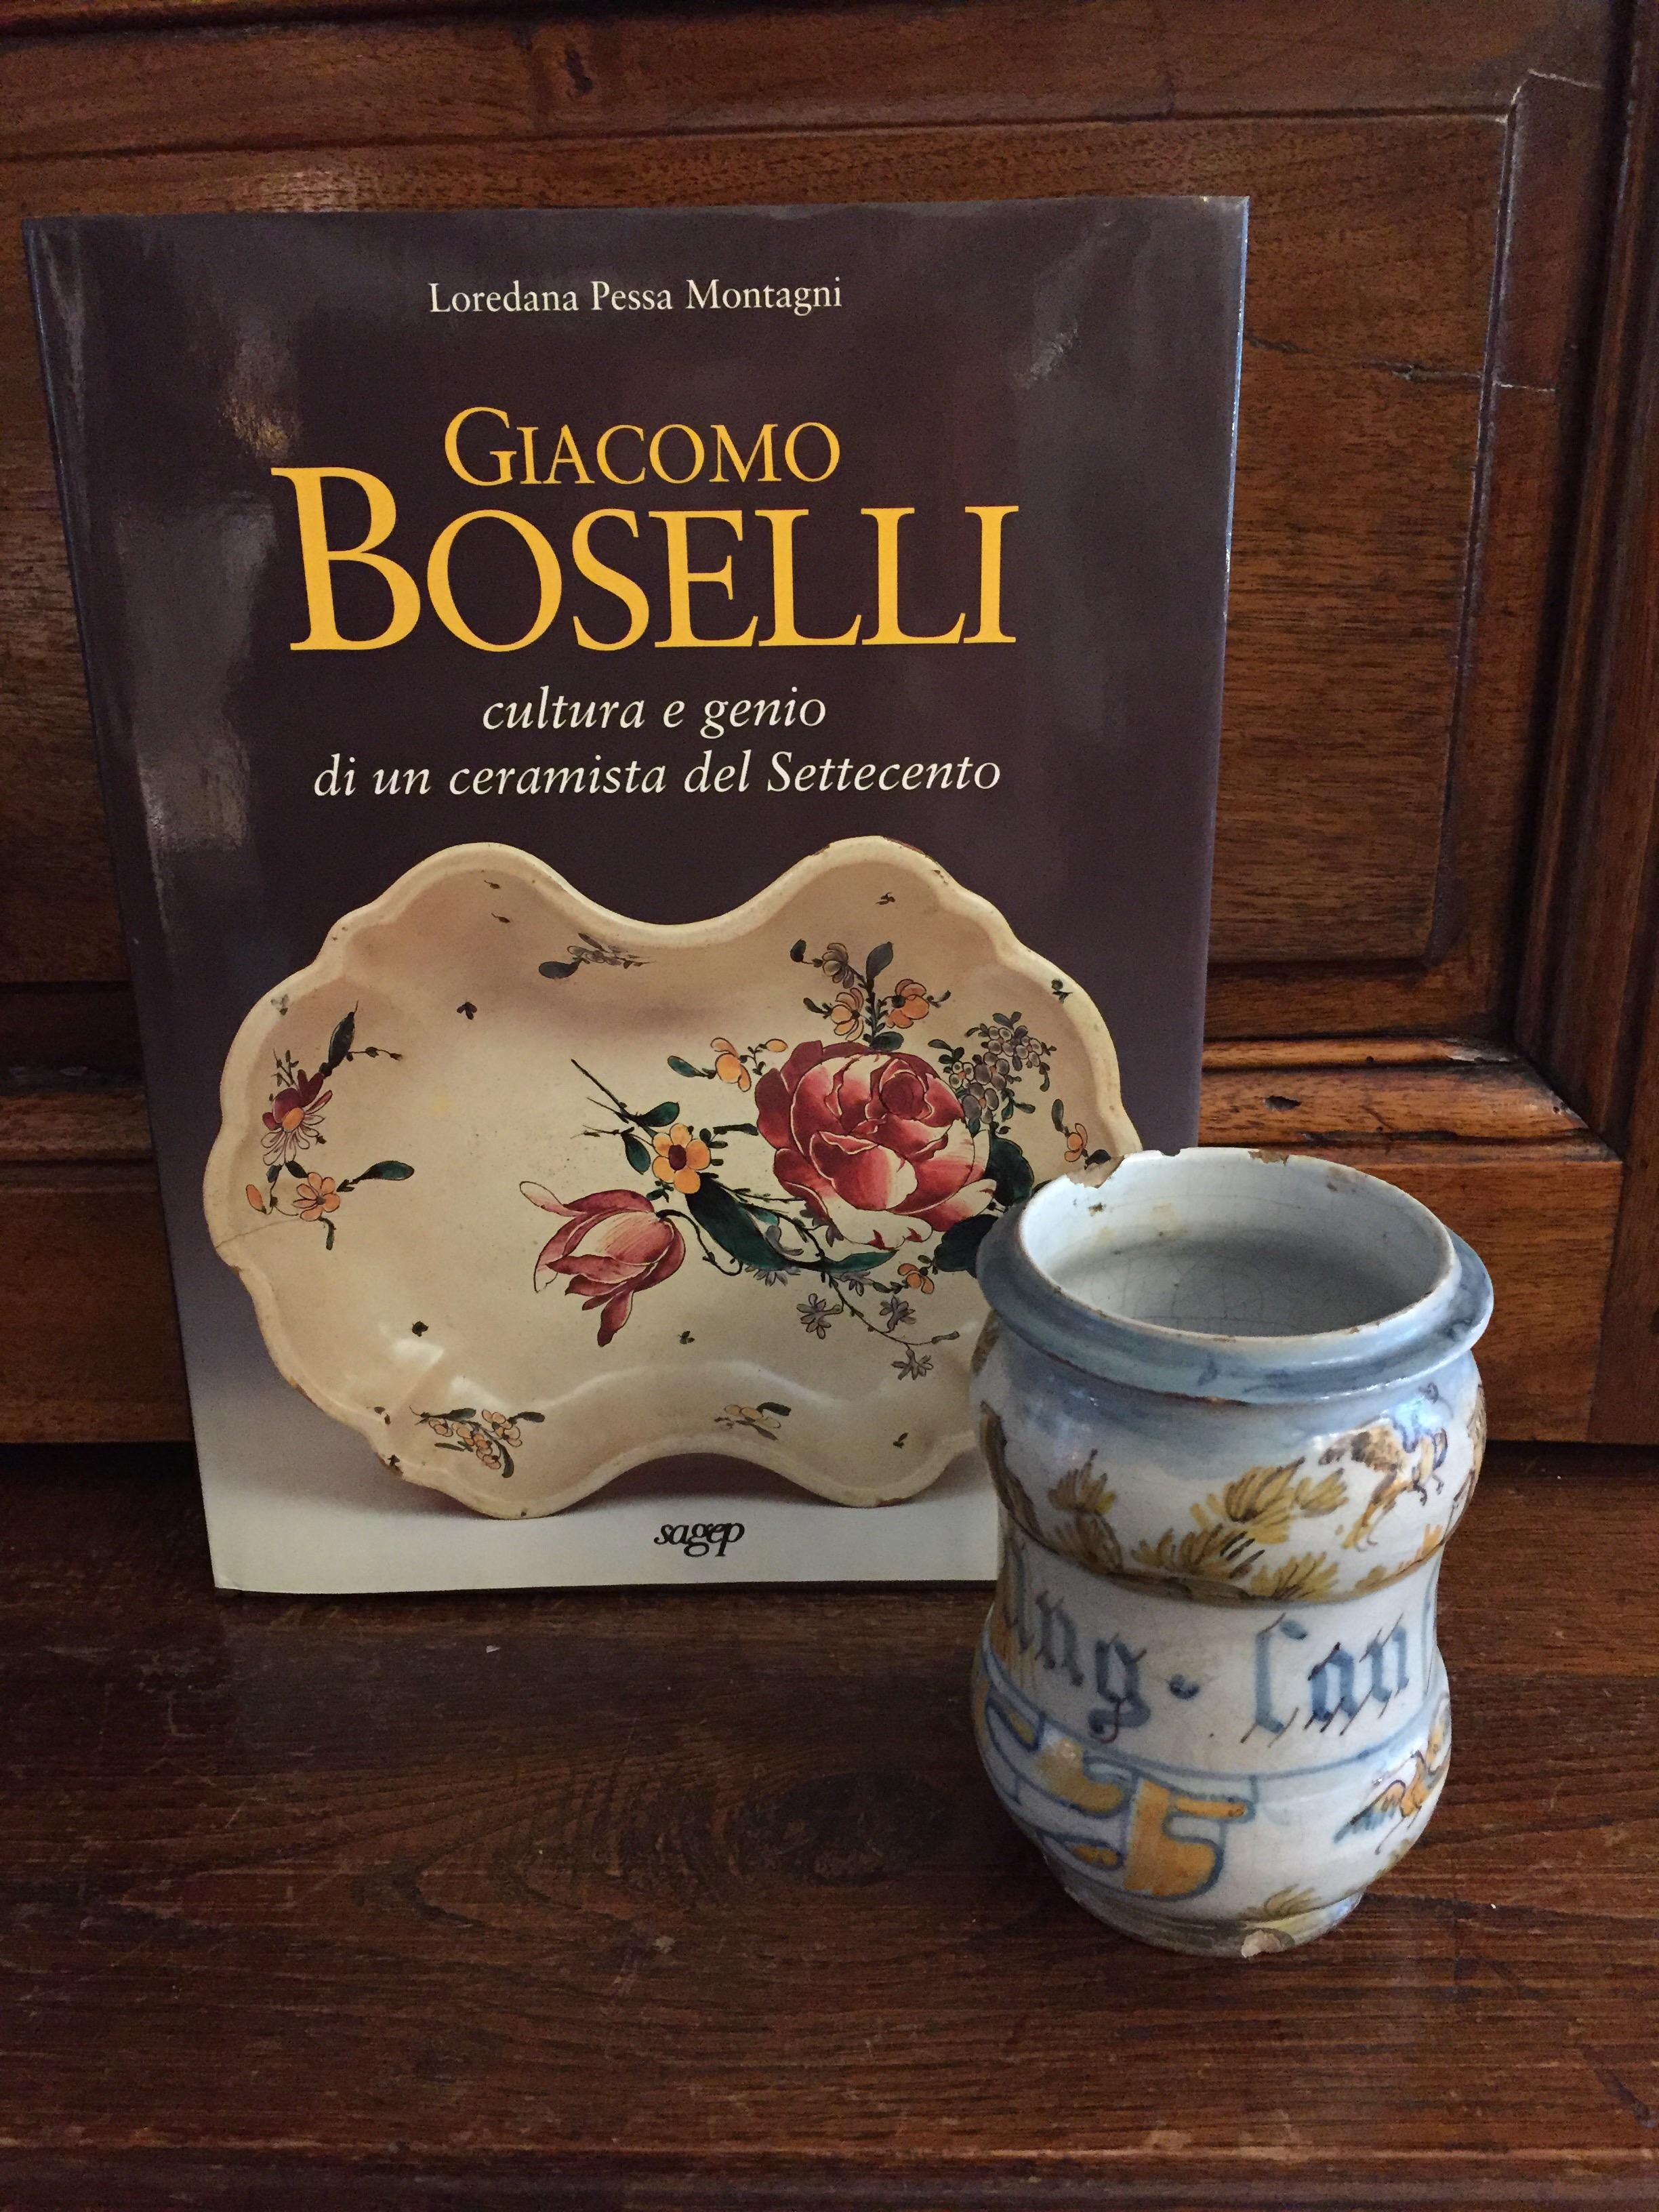 Ein neoklassischer, polychrom verzierter Drogenkrug oder Albarello aus dem späten 18. Jahrhundert, signiert von dem italienischen Künstler Boselli Giacomo aus Savona (1744-1808), eine seltene blaue, gelbe und polychrome Majolika-Vase für